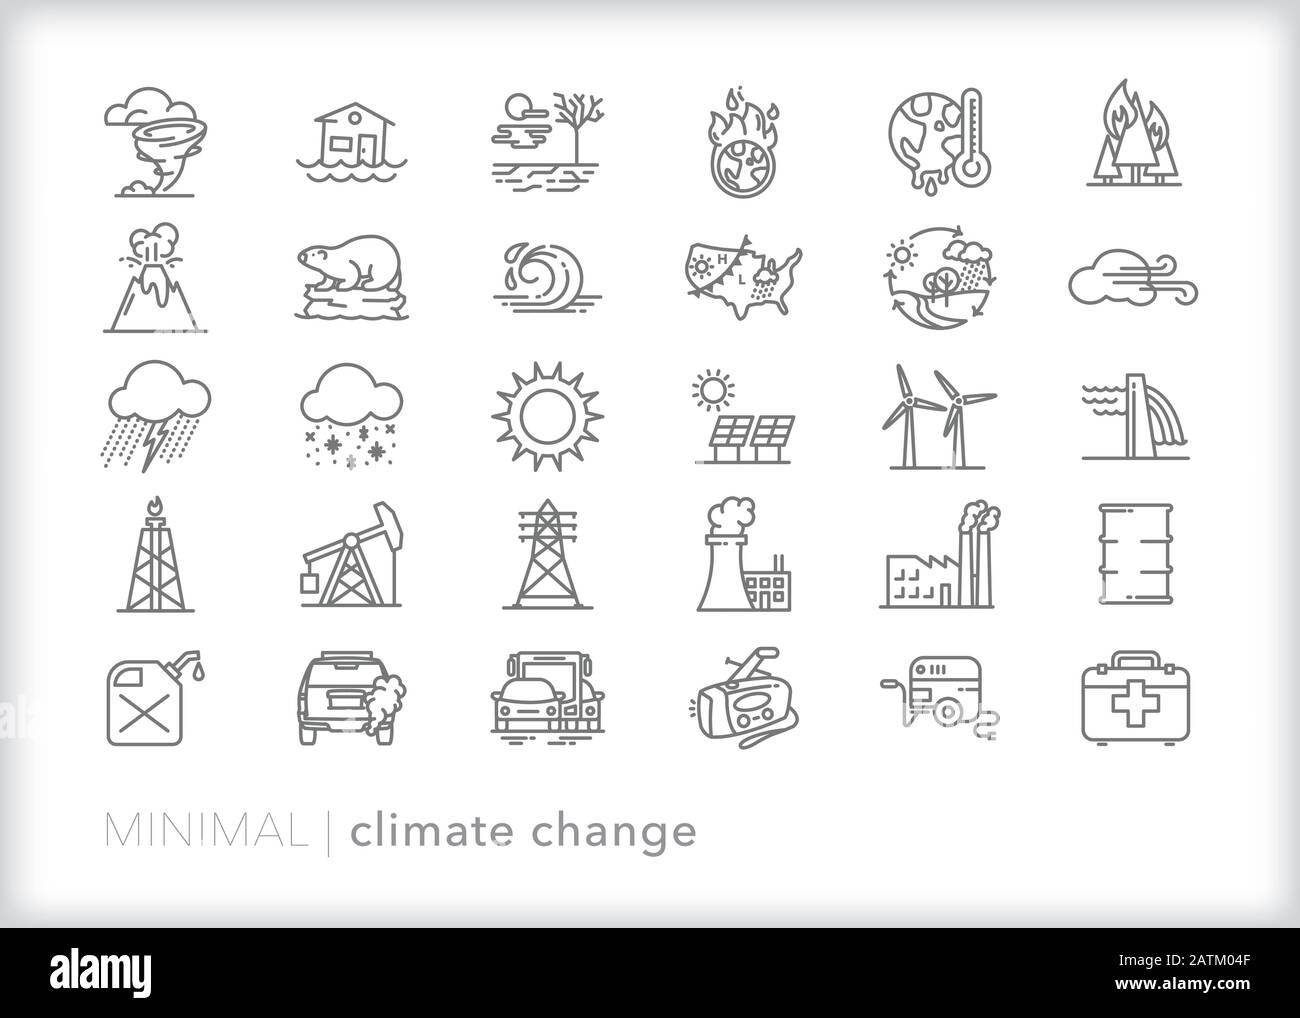 Ensemble de 30 icônes de la ligne des changements climatiques, telles que la météo, les catastrophes naturelles, l'industrie pétrolière et énergétique et d'autres éléments des effets du réchauffement climatique Illustration de Vecteur